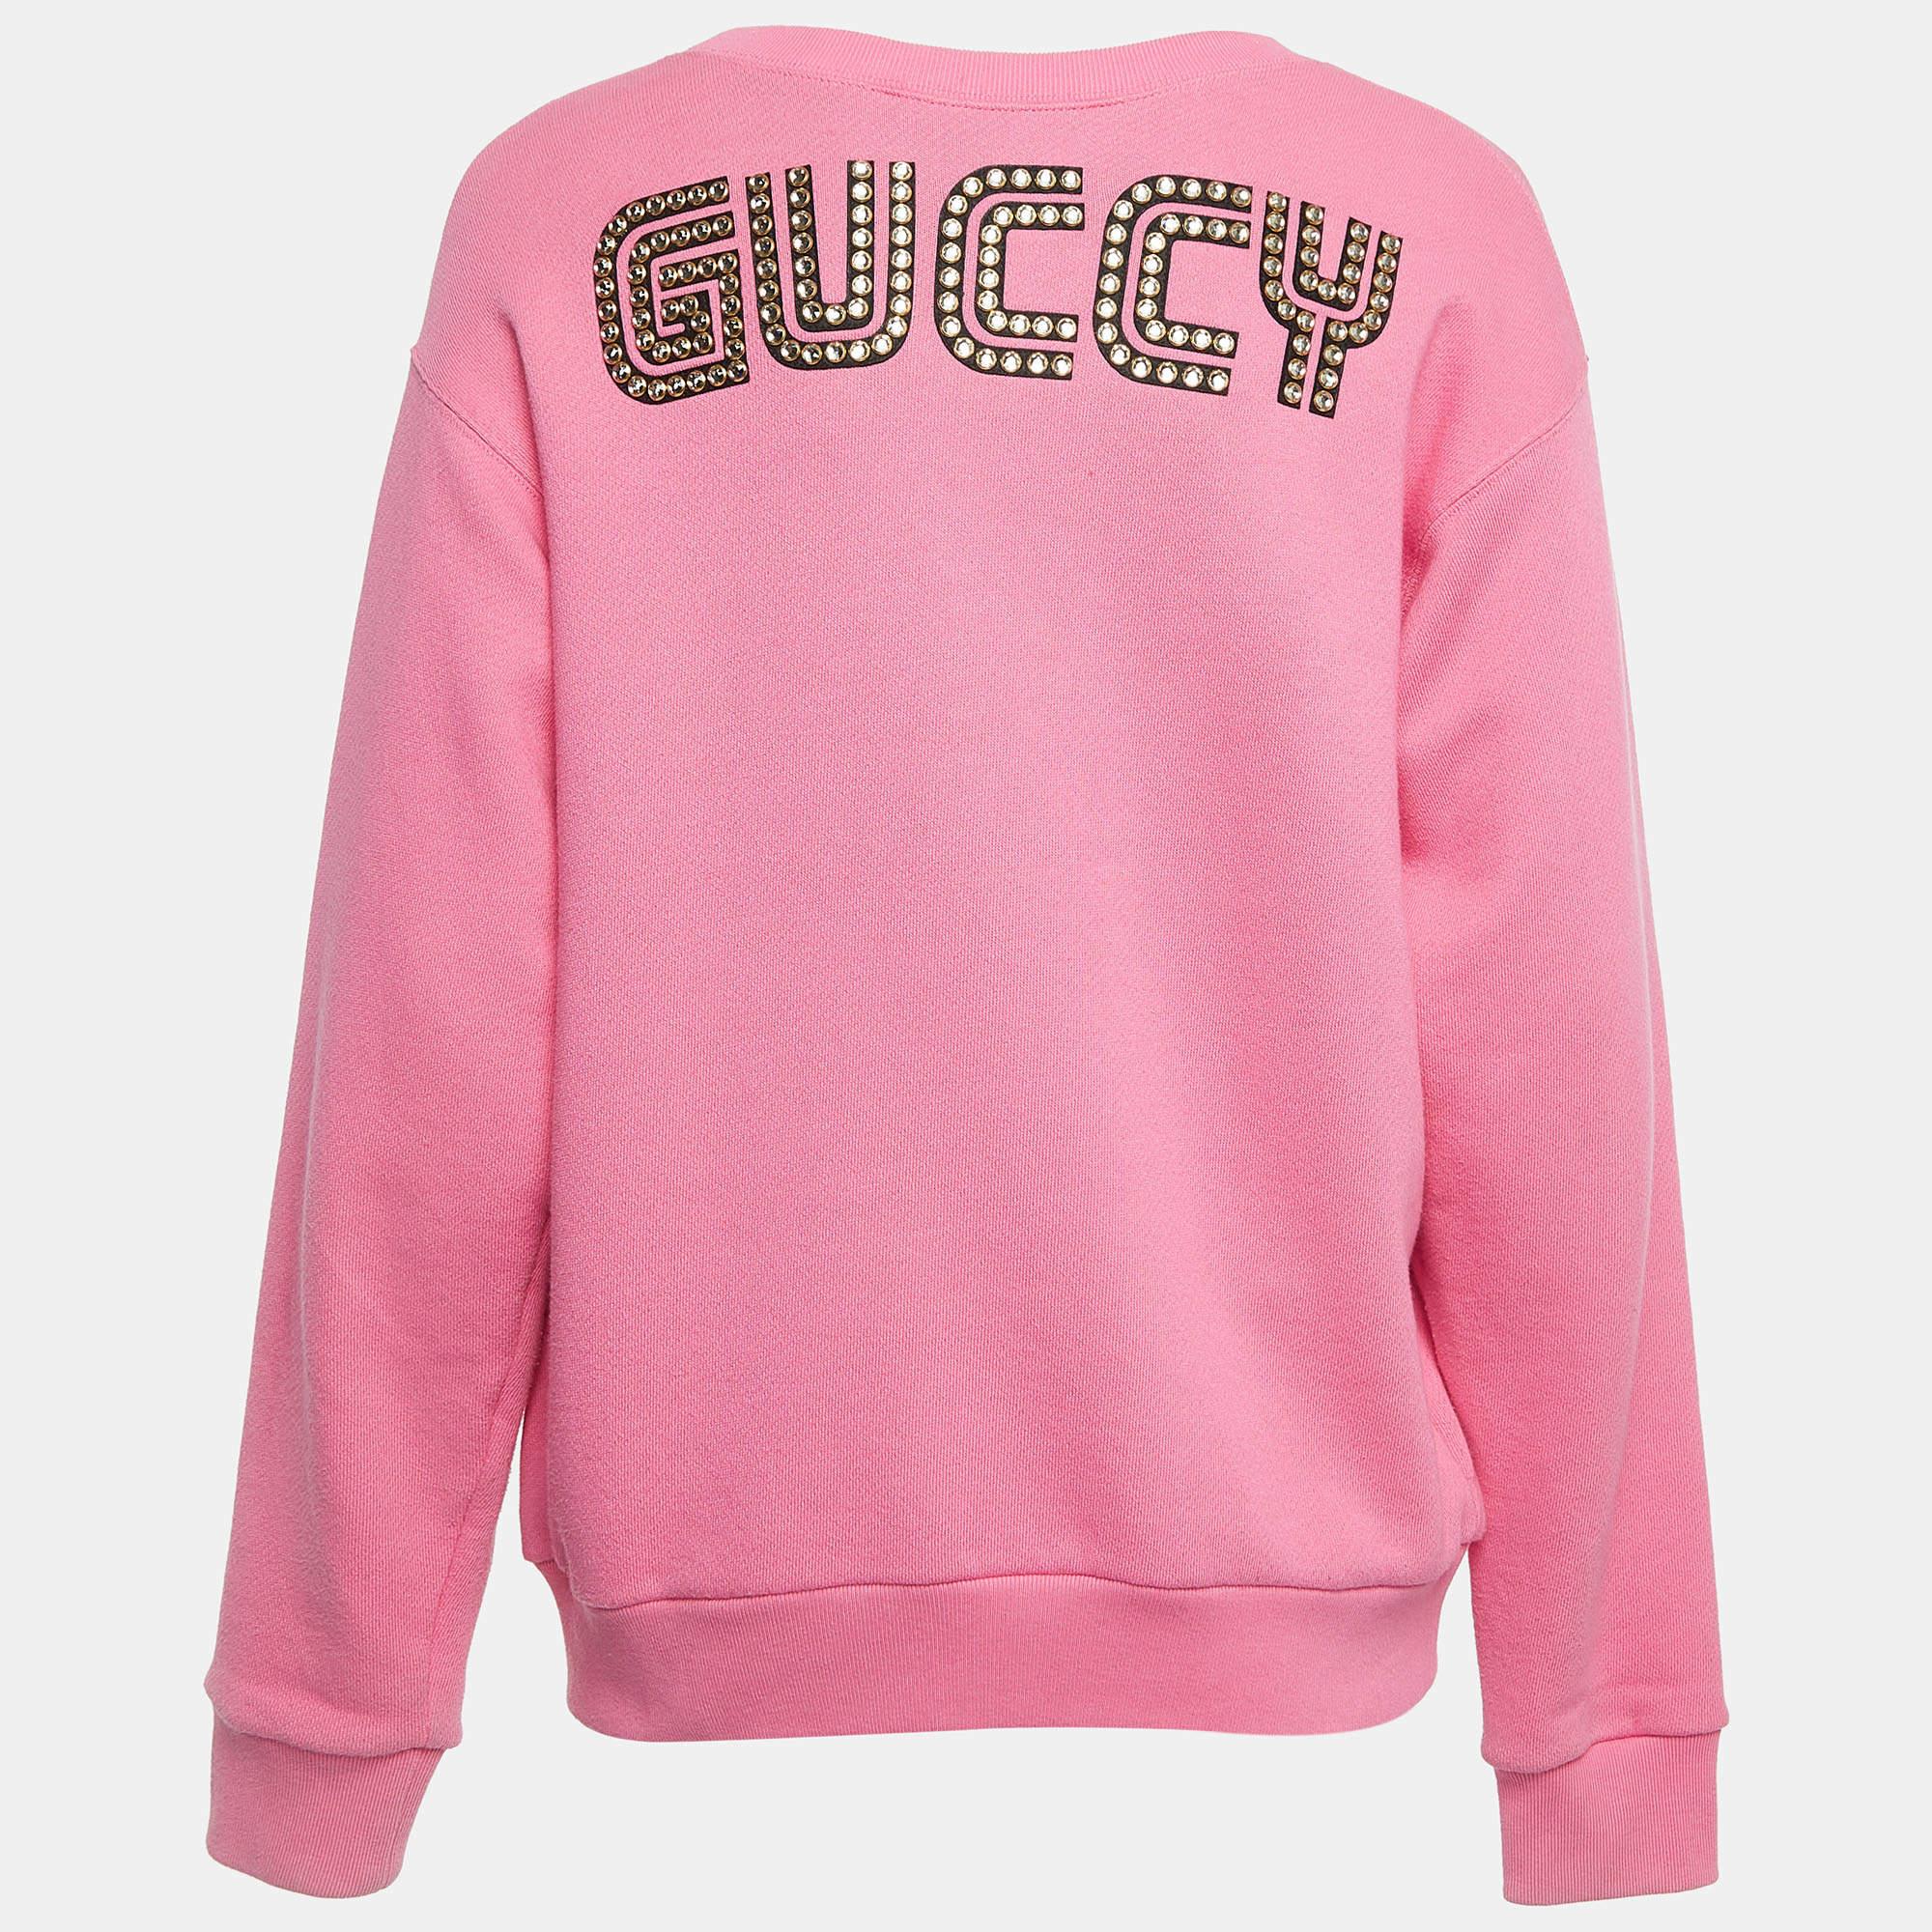 Entdecken Sie den Inbegriff von gemütlichem Chic mit diesem Gucci Sweatshirt für Damen. Sie ist sowohl warm als auch stilvoll und kombiniert Komfort mit modischen Details, was sie zu Ihrer ersten Wahl für lässige Raffinesse macht.

